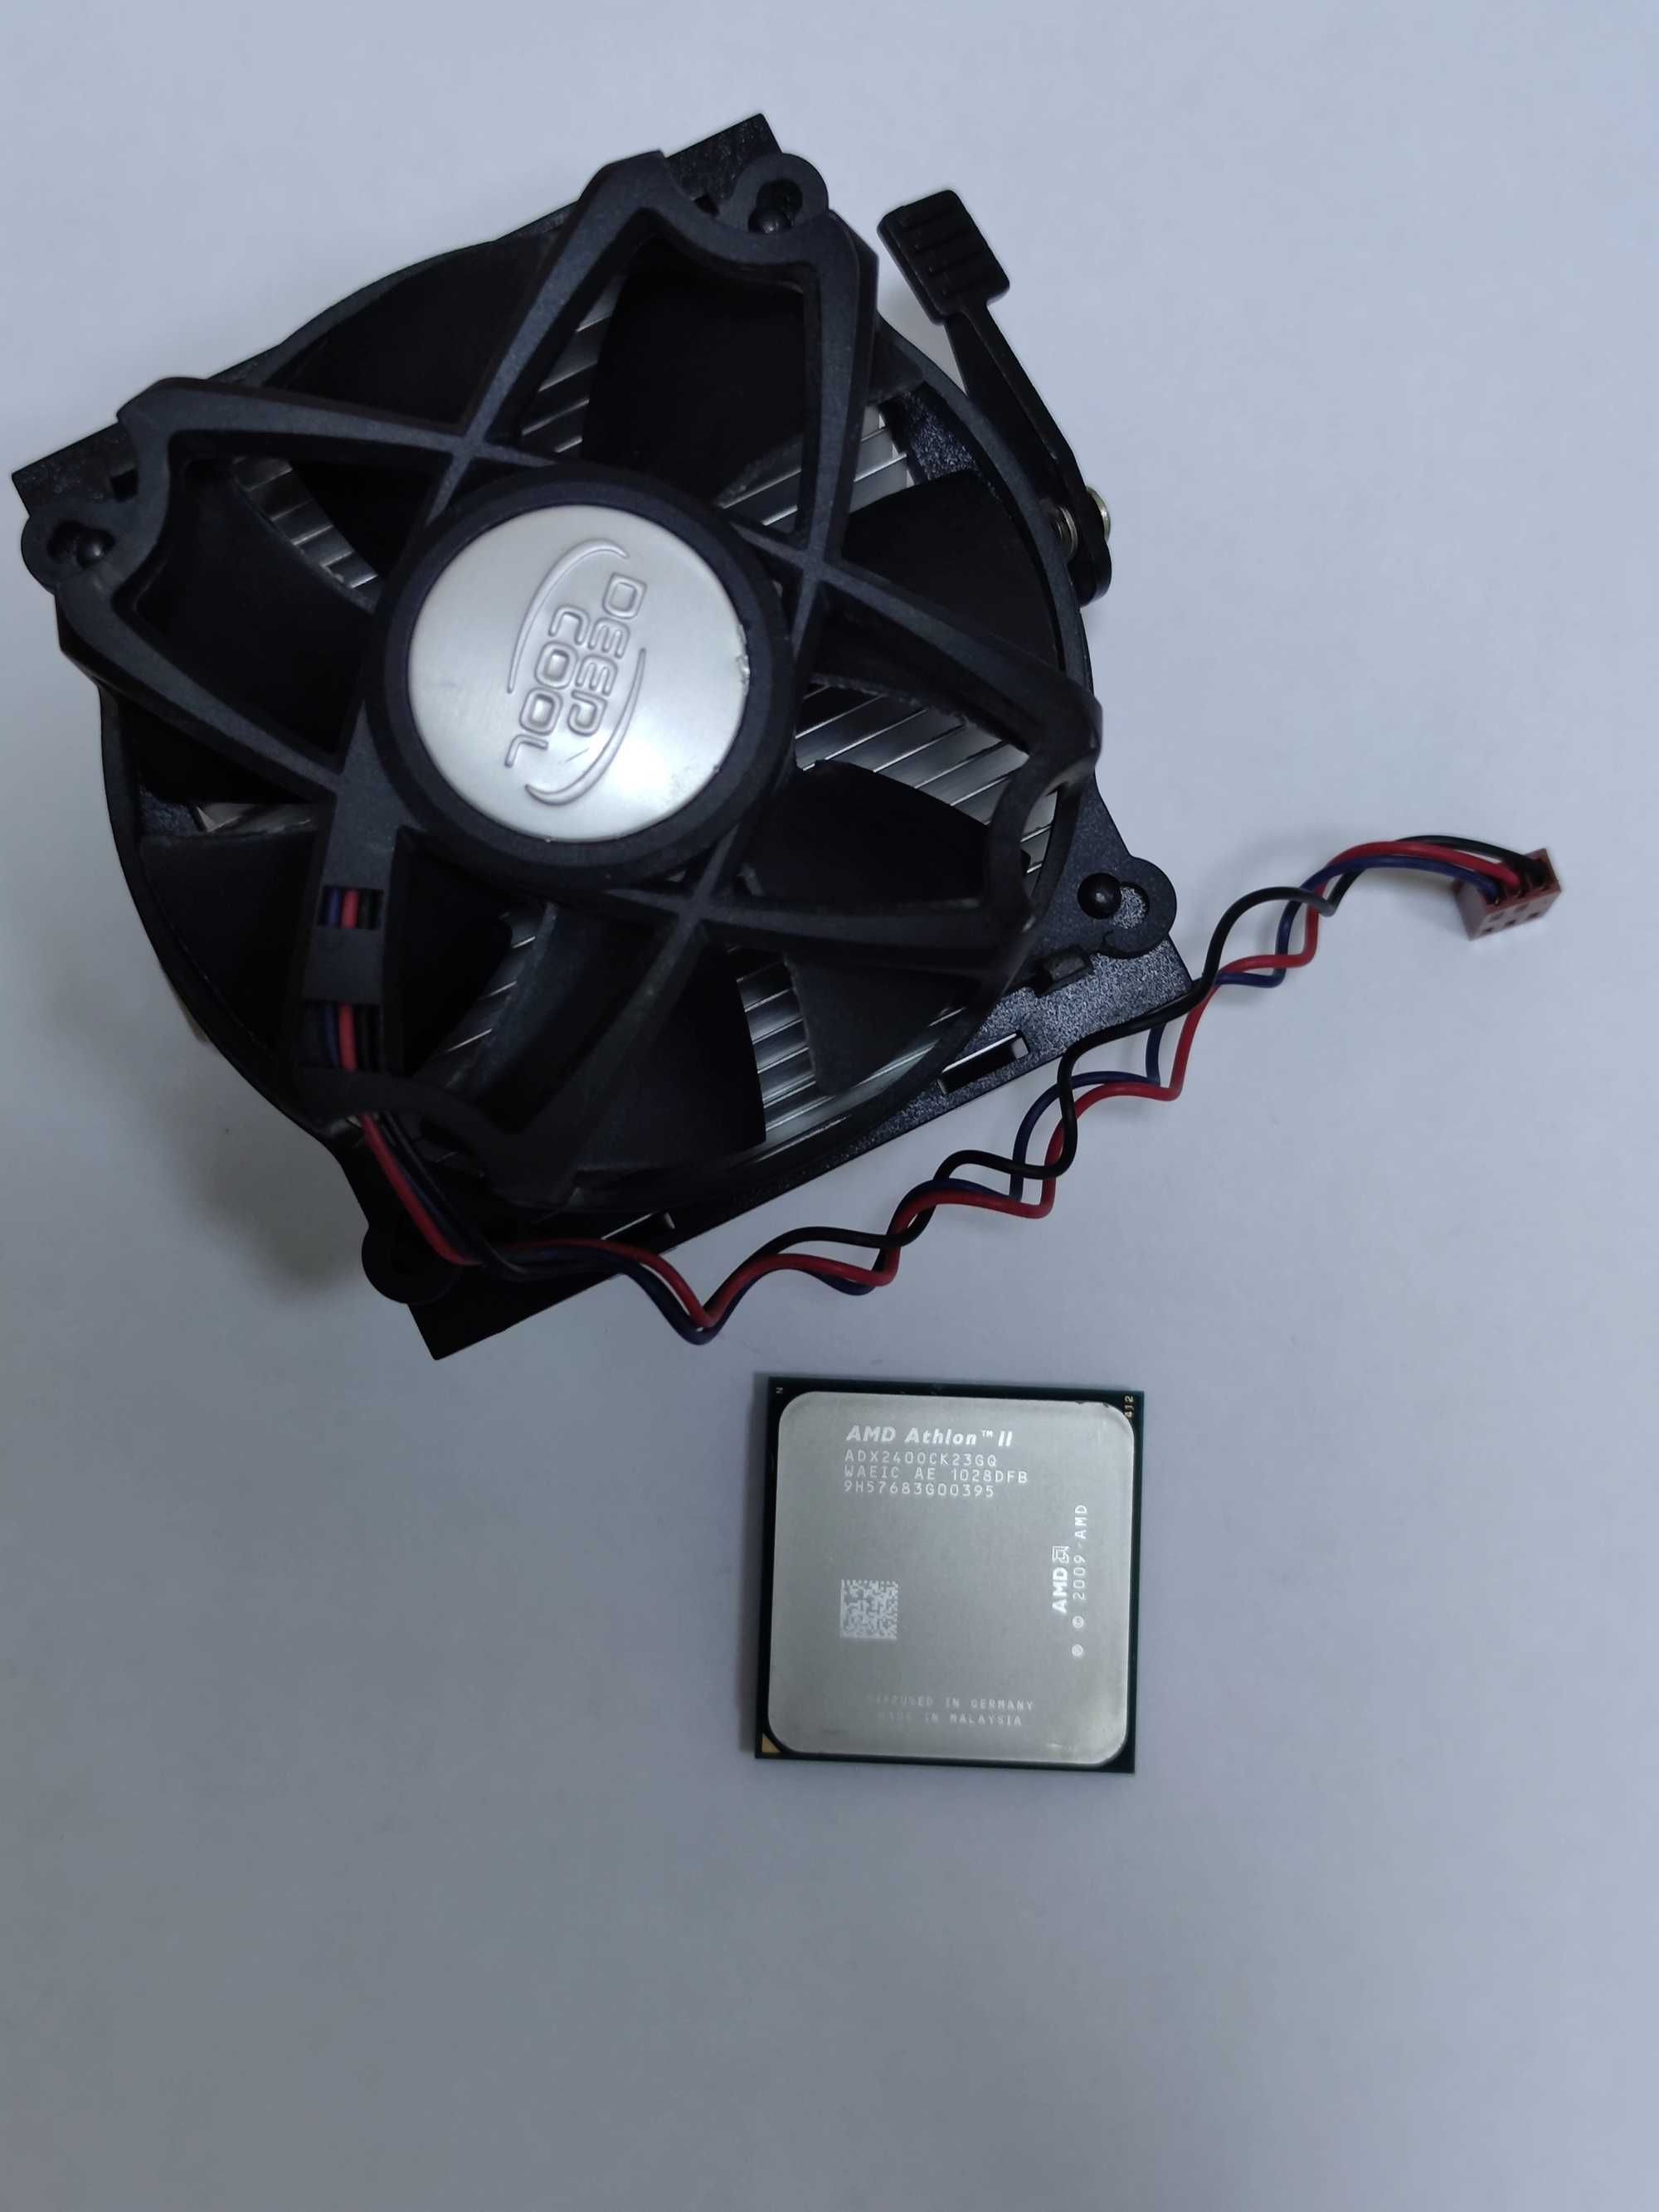 Материнская плата Asus M4N68T-M AM3, Geforce 7025 + CPU + Cooler